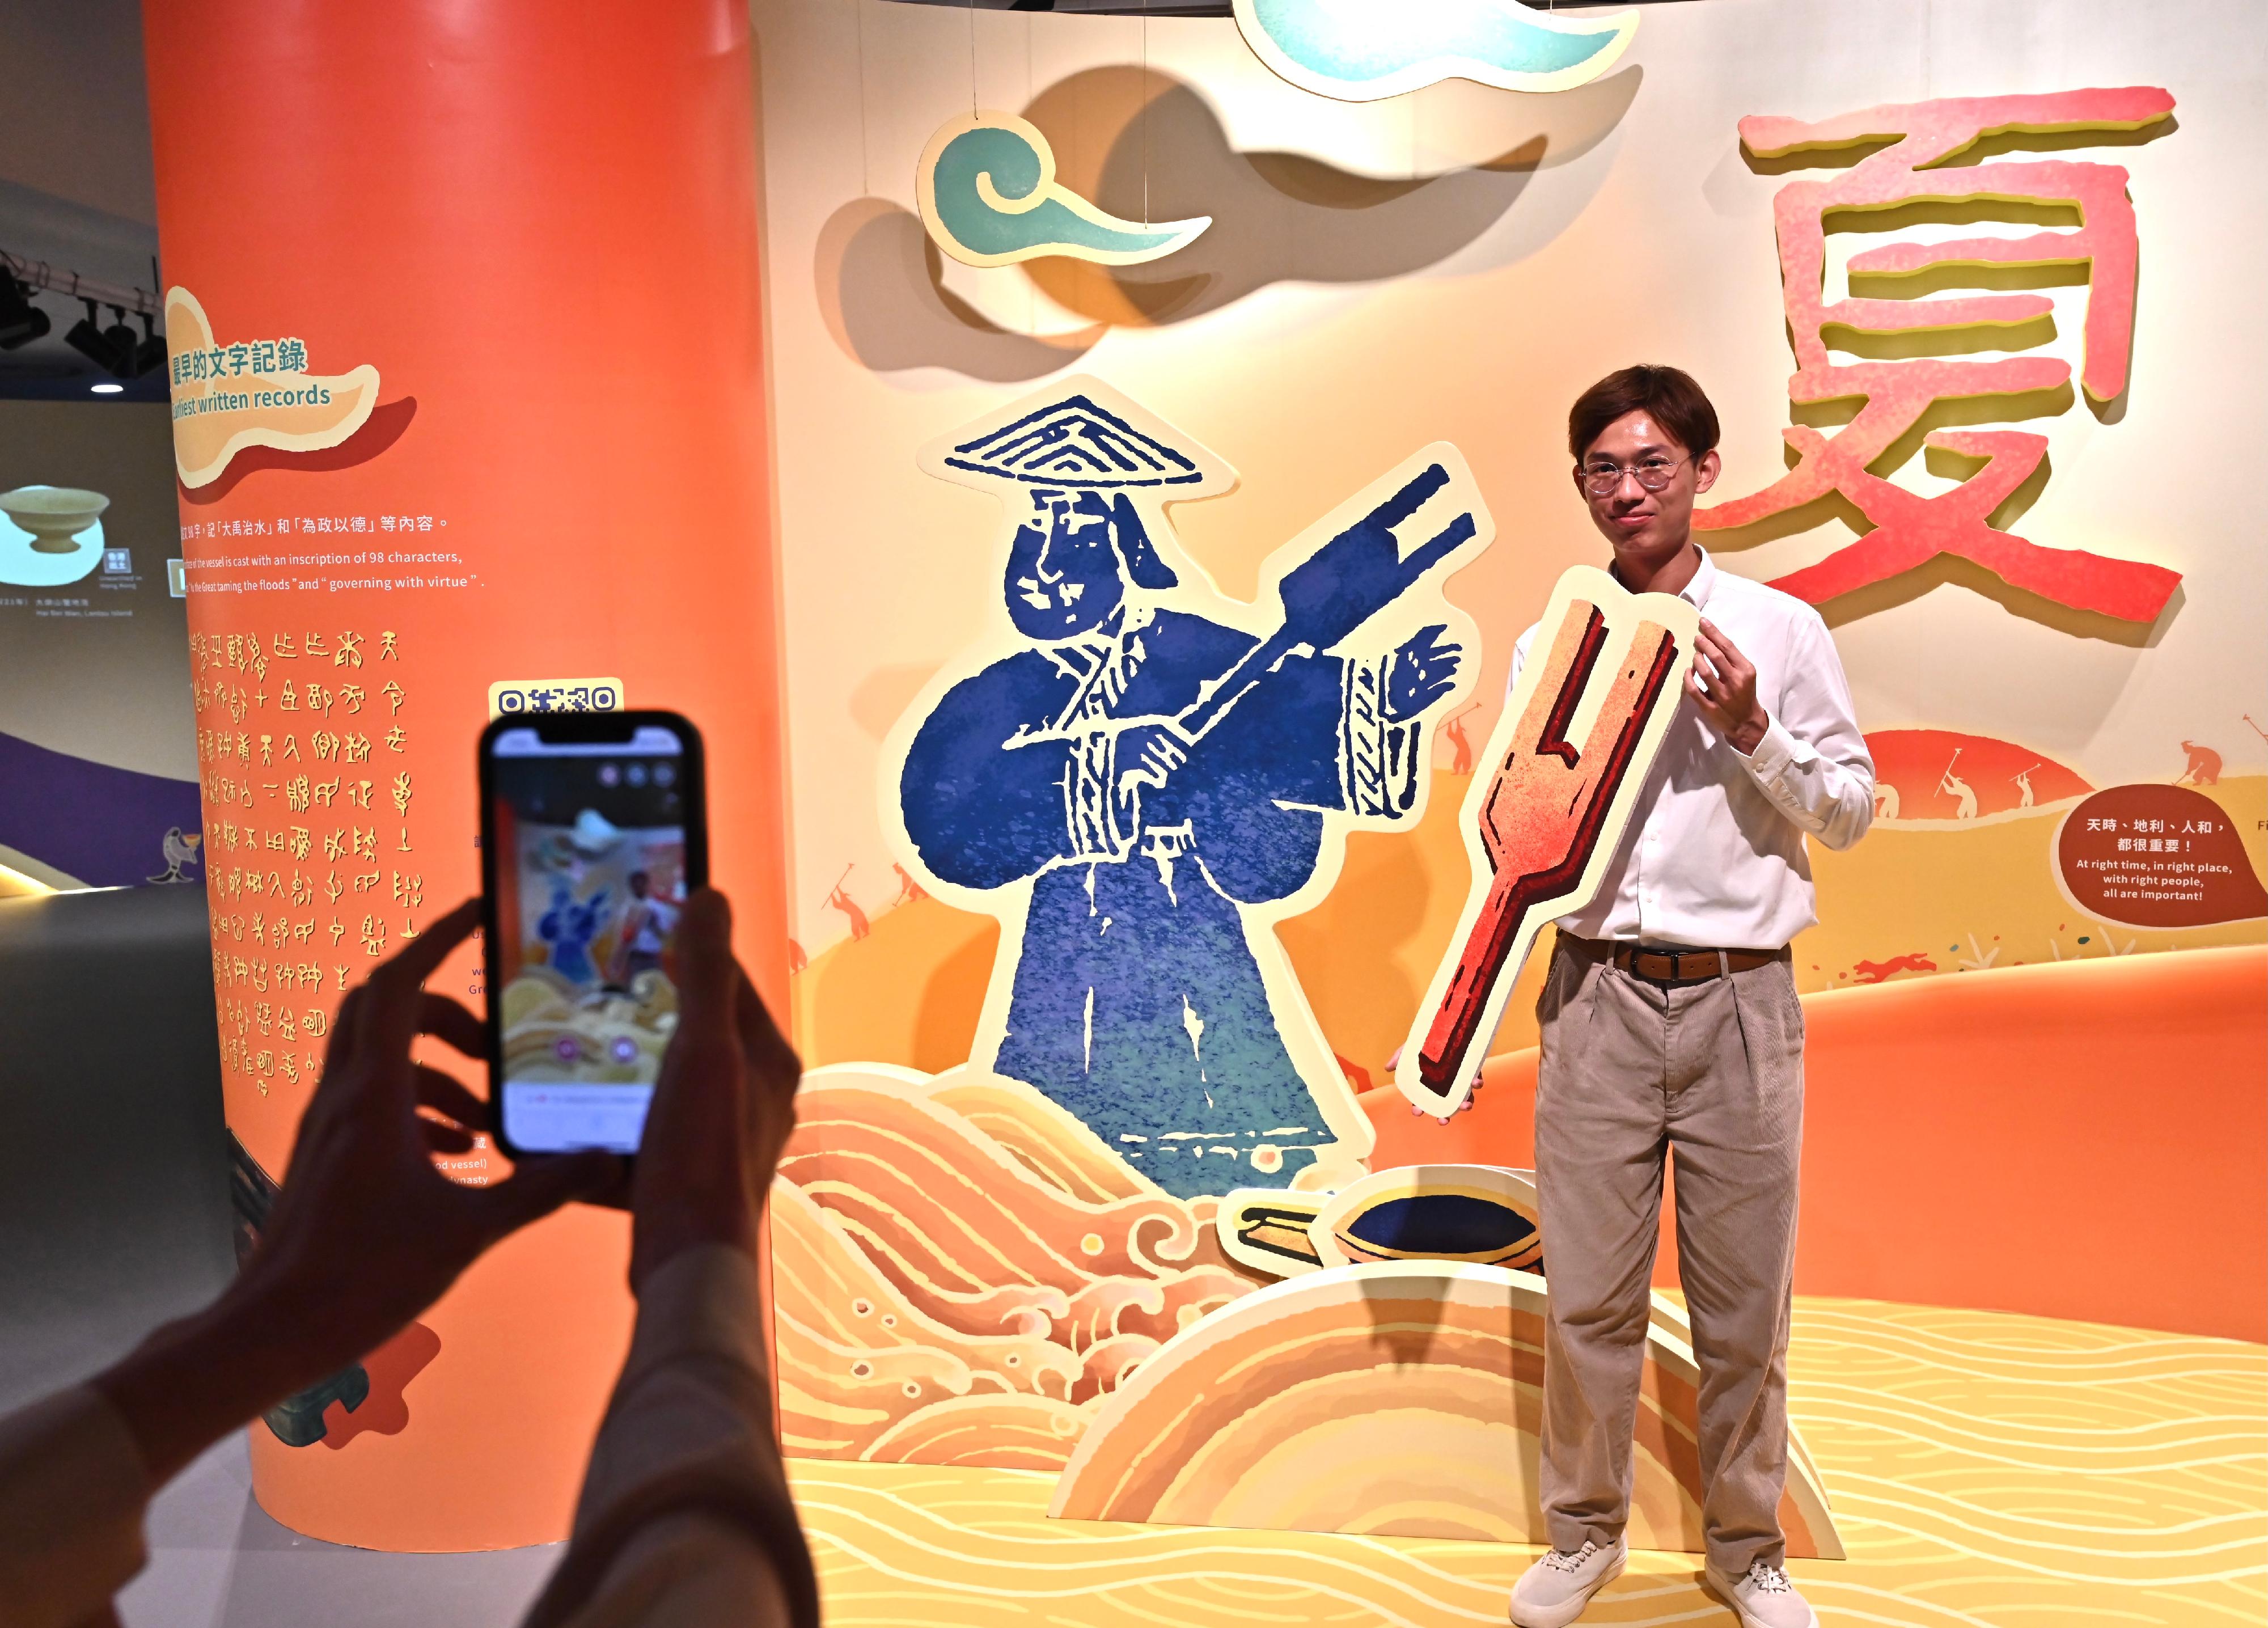 香港历史博物馆的「香港赛马会呈献系列：天地之中—河南夏商周三代文明展」，明日（四月三日）起开放给予公众参观。图示教育互动区，透过趣味展示、互动游戏及动画，让参观者认识和了解璀璨的三代文明及其与现今生活的关连。
